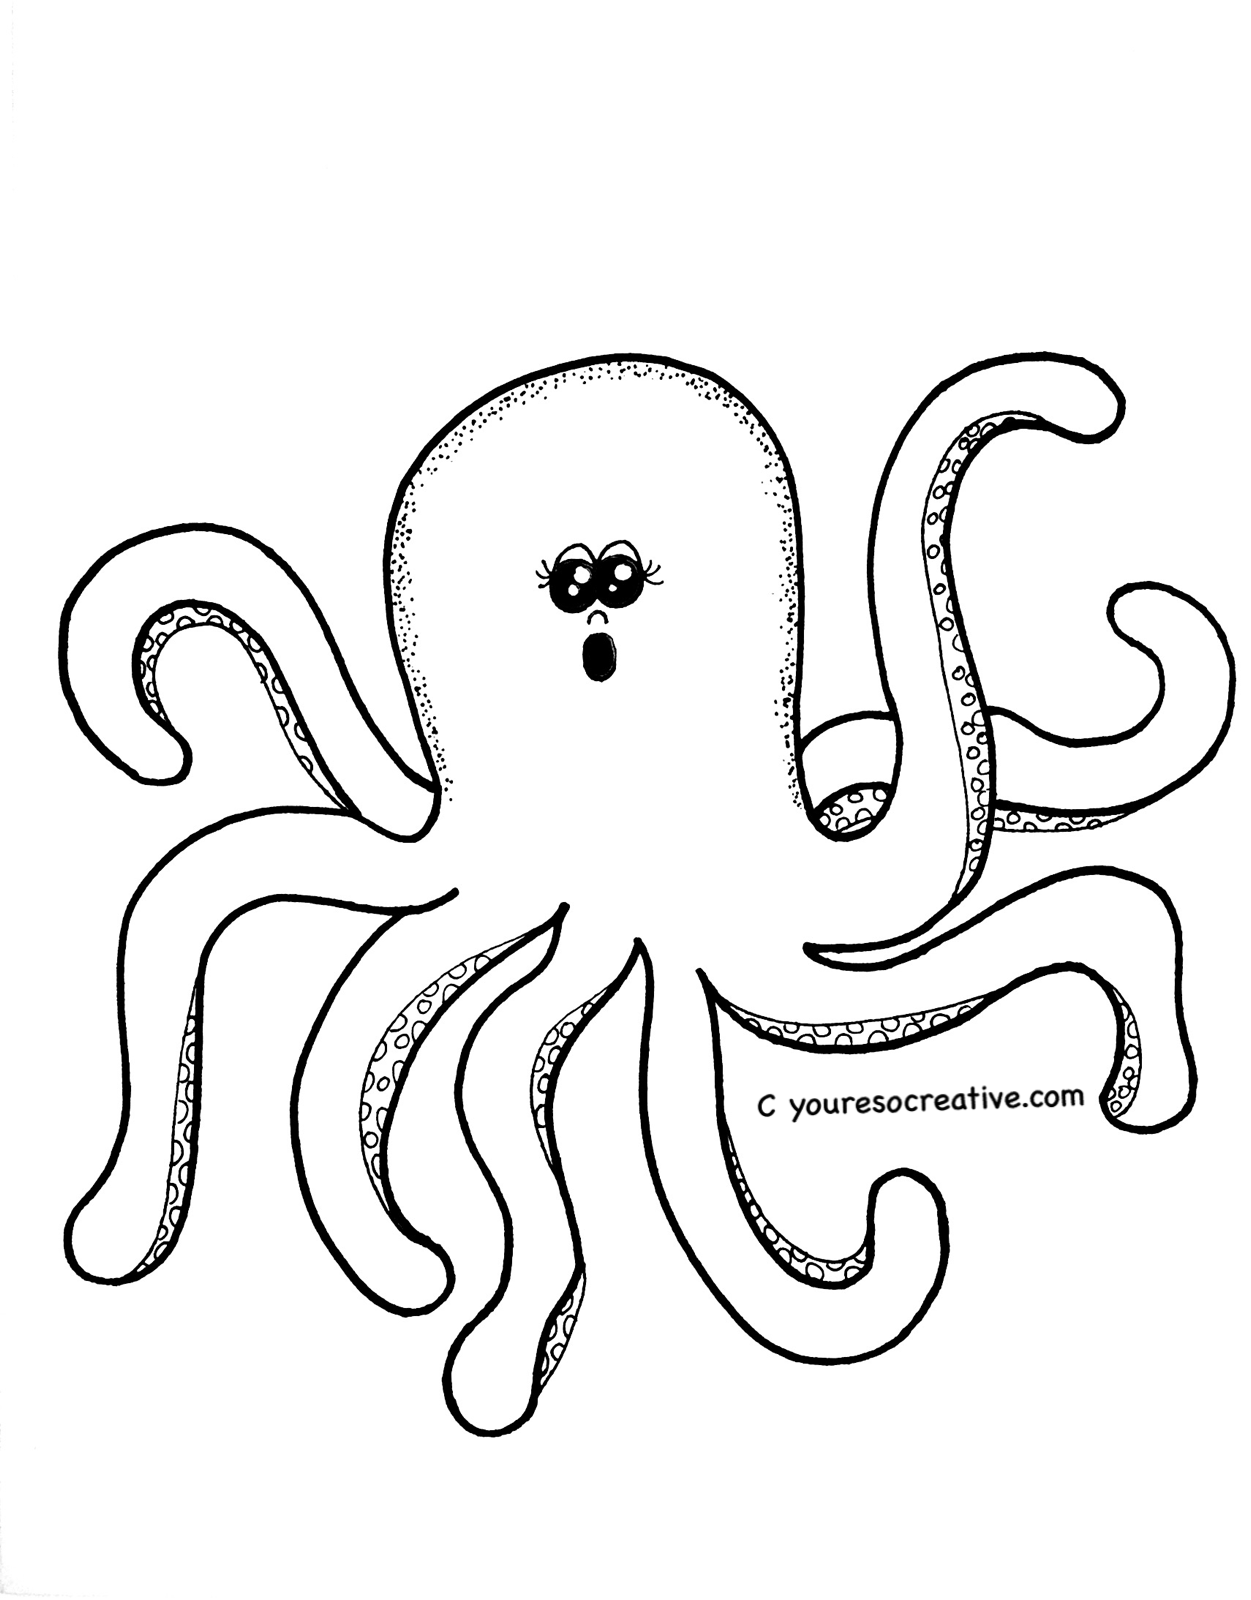 Octopus You're so creative